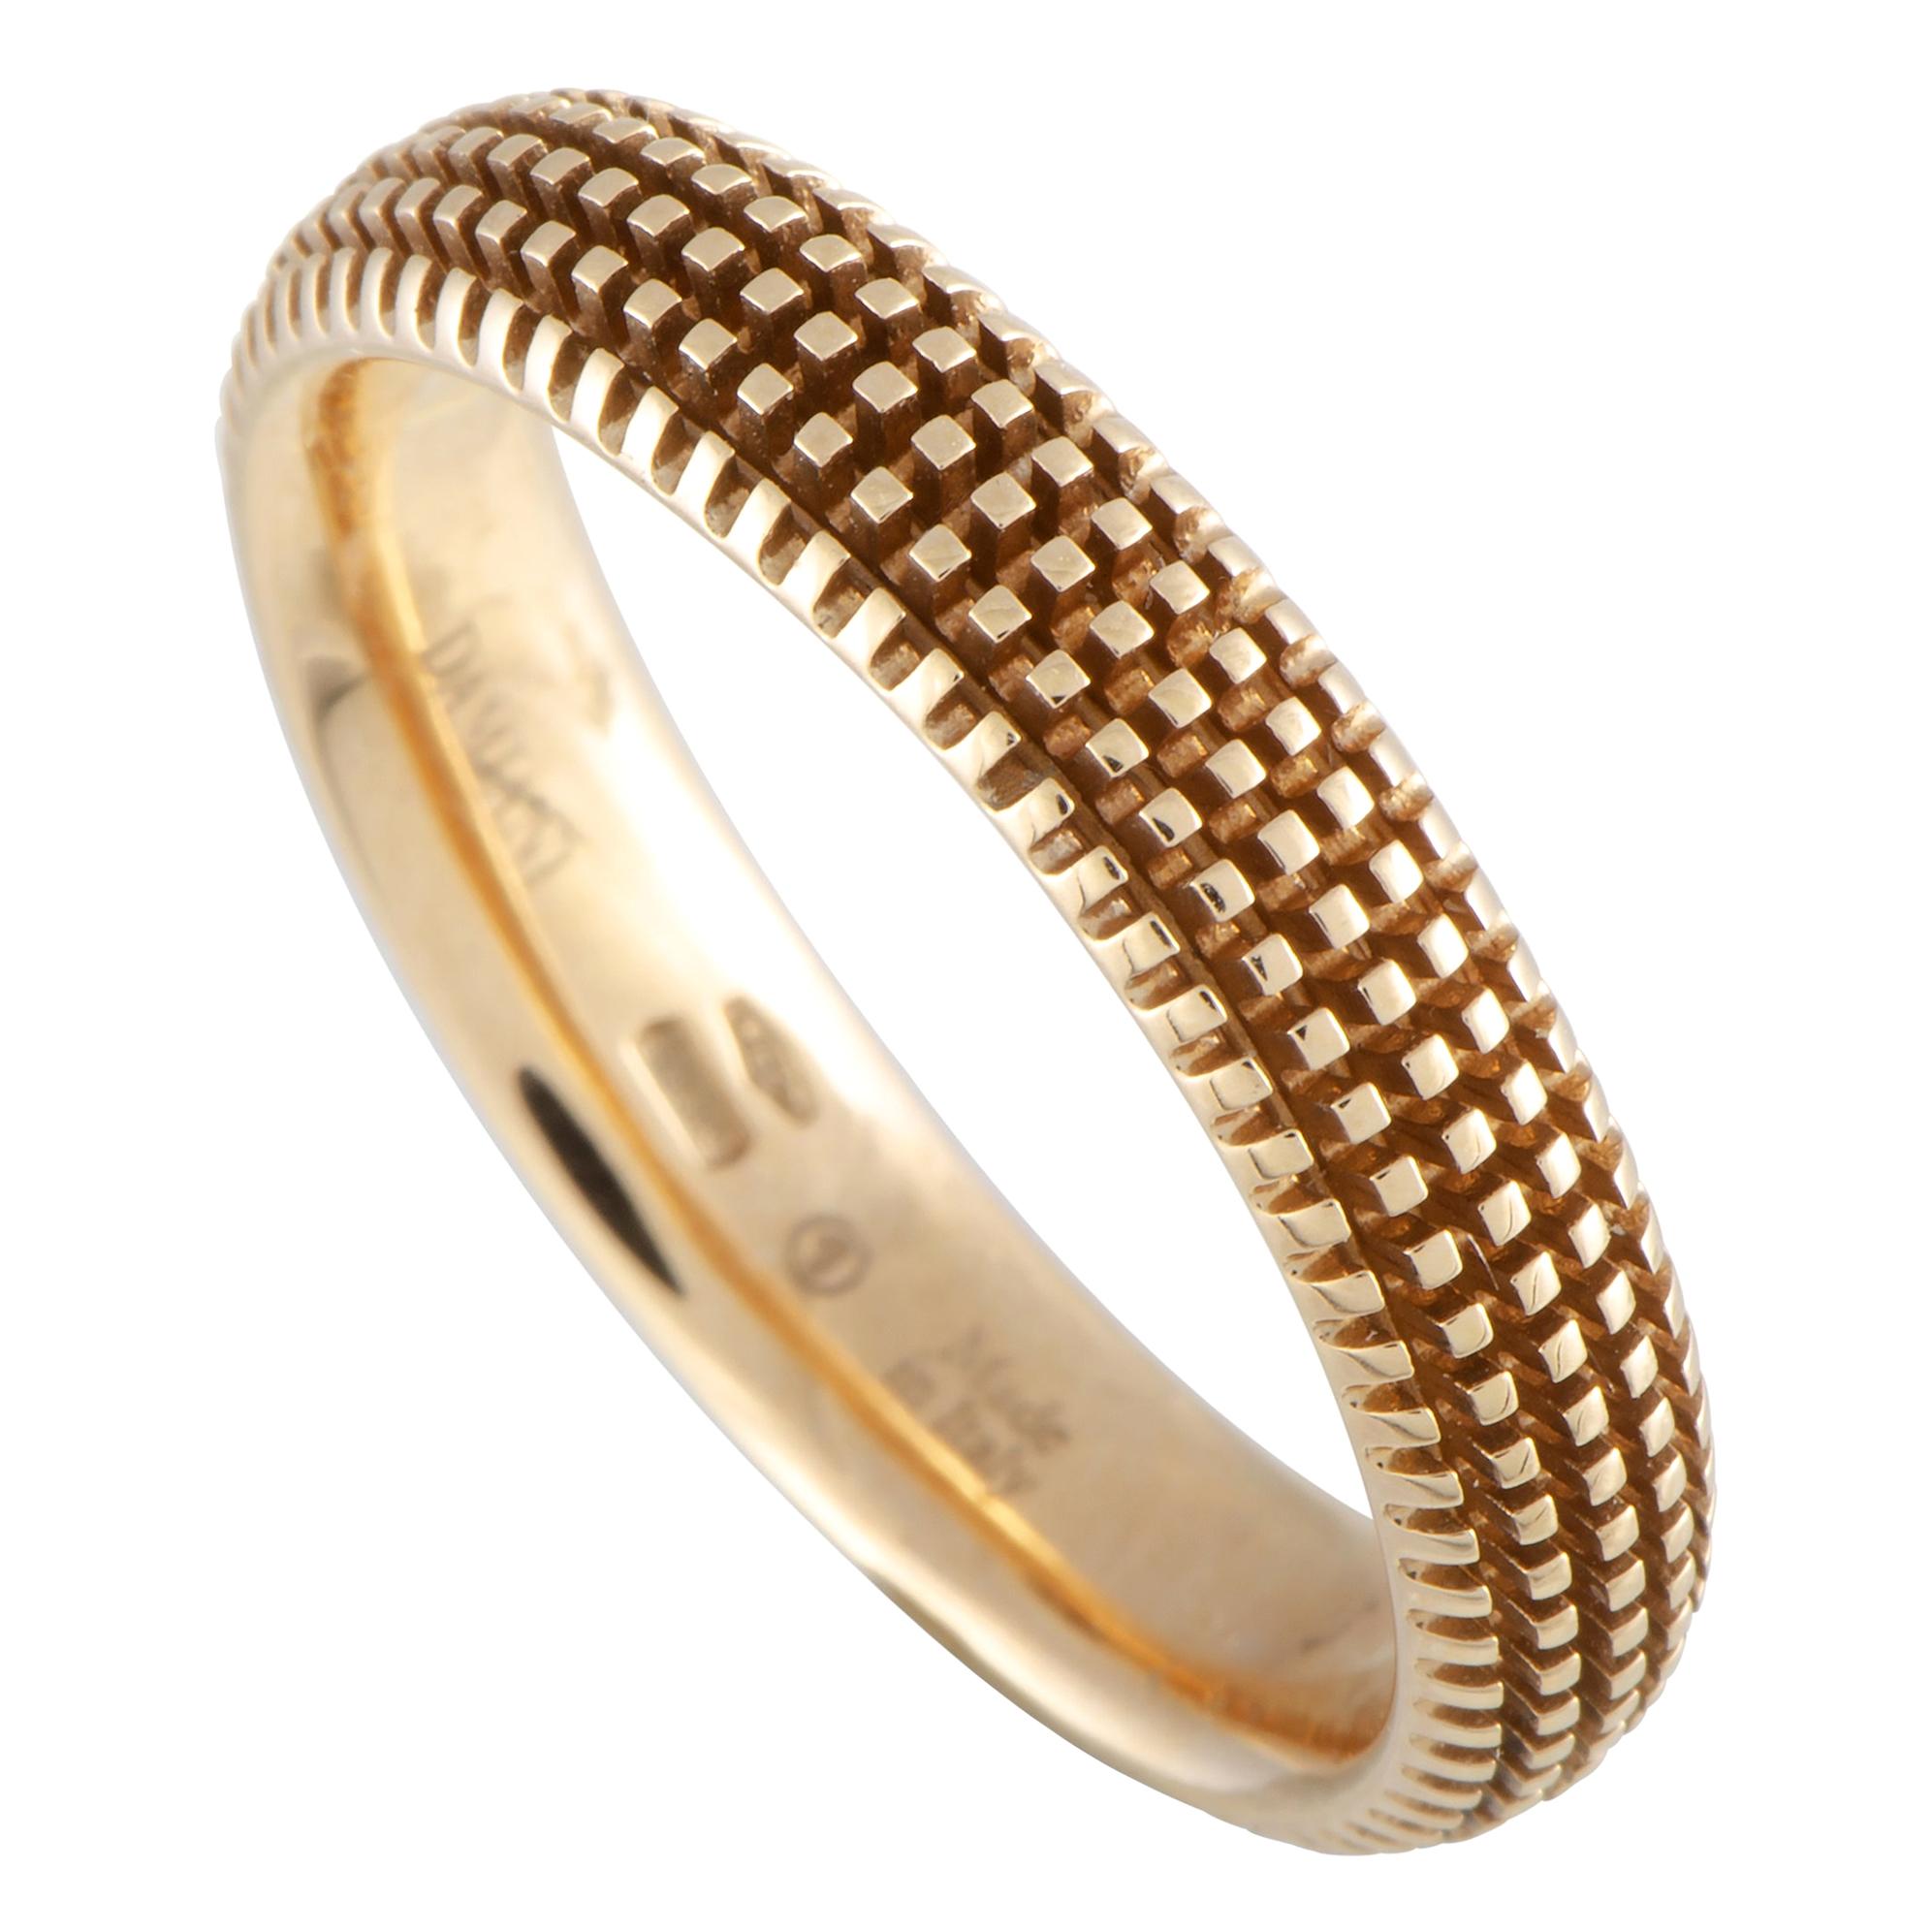 Damiani Metropolitan 18 Karat Rose Gold Diamond Textured Band Ring